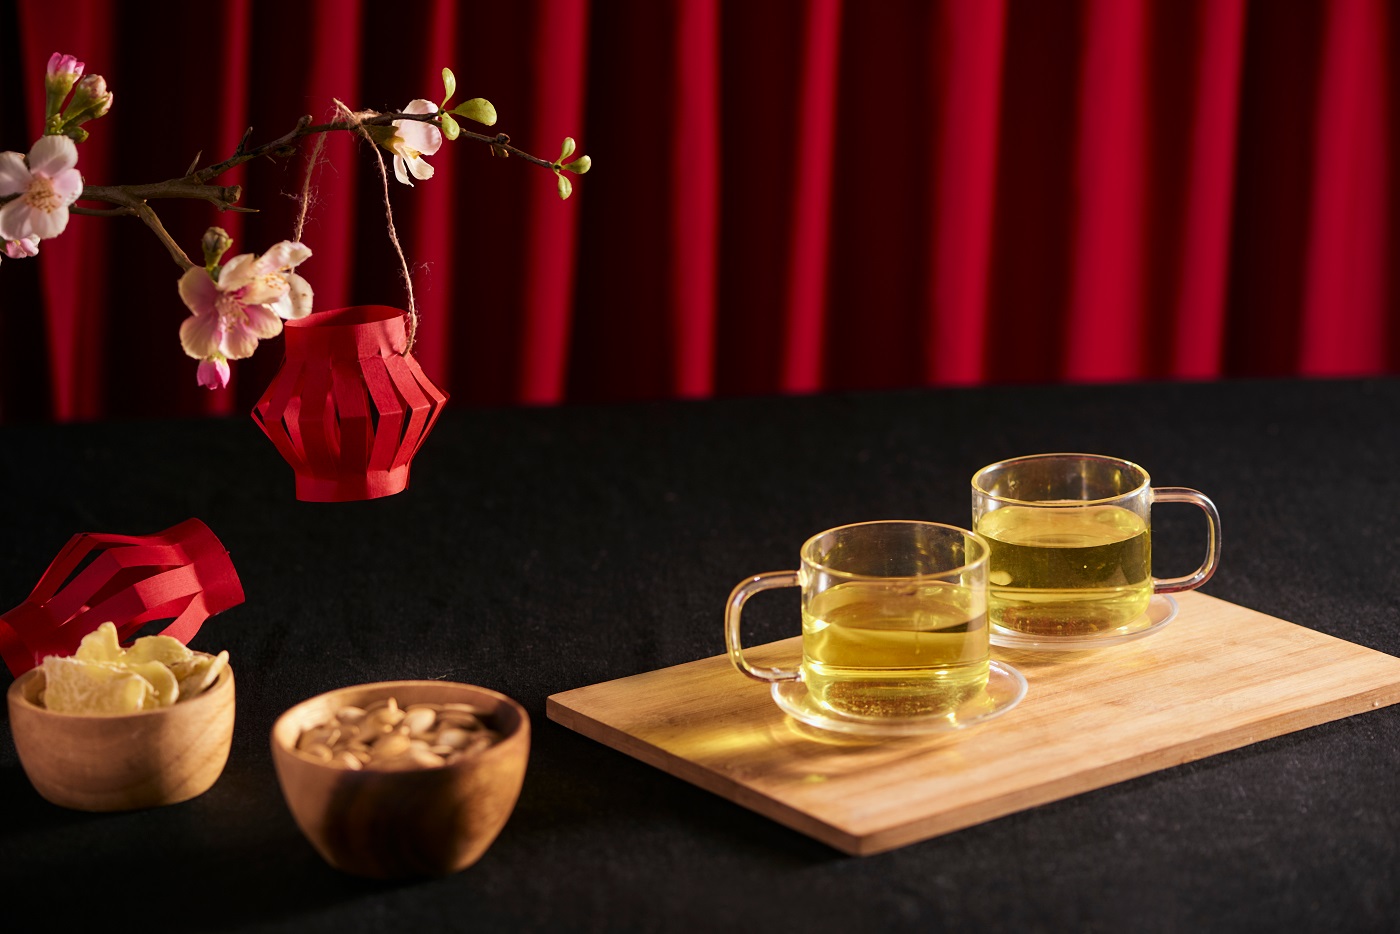 Nước trà xanh và trà đen có khả năng giảm thải mỡ thừa không?
